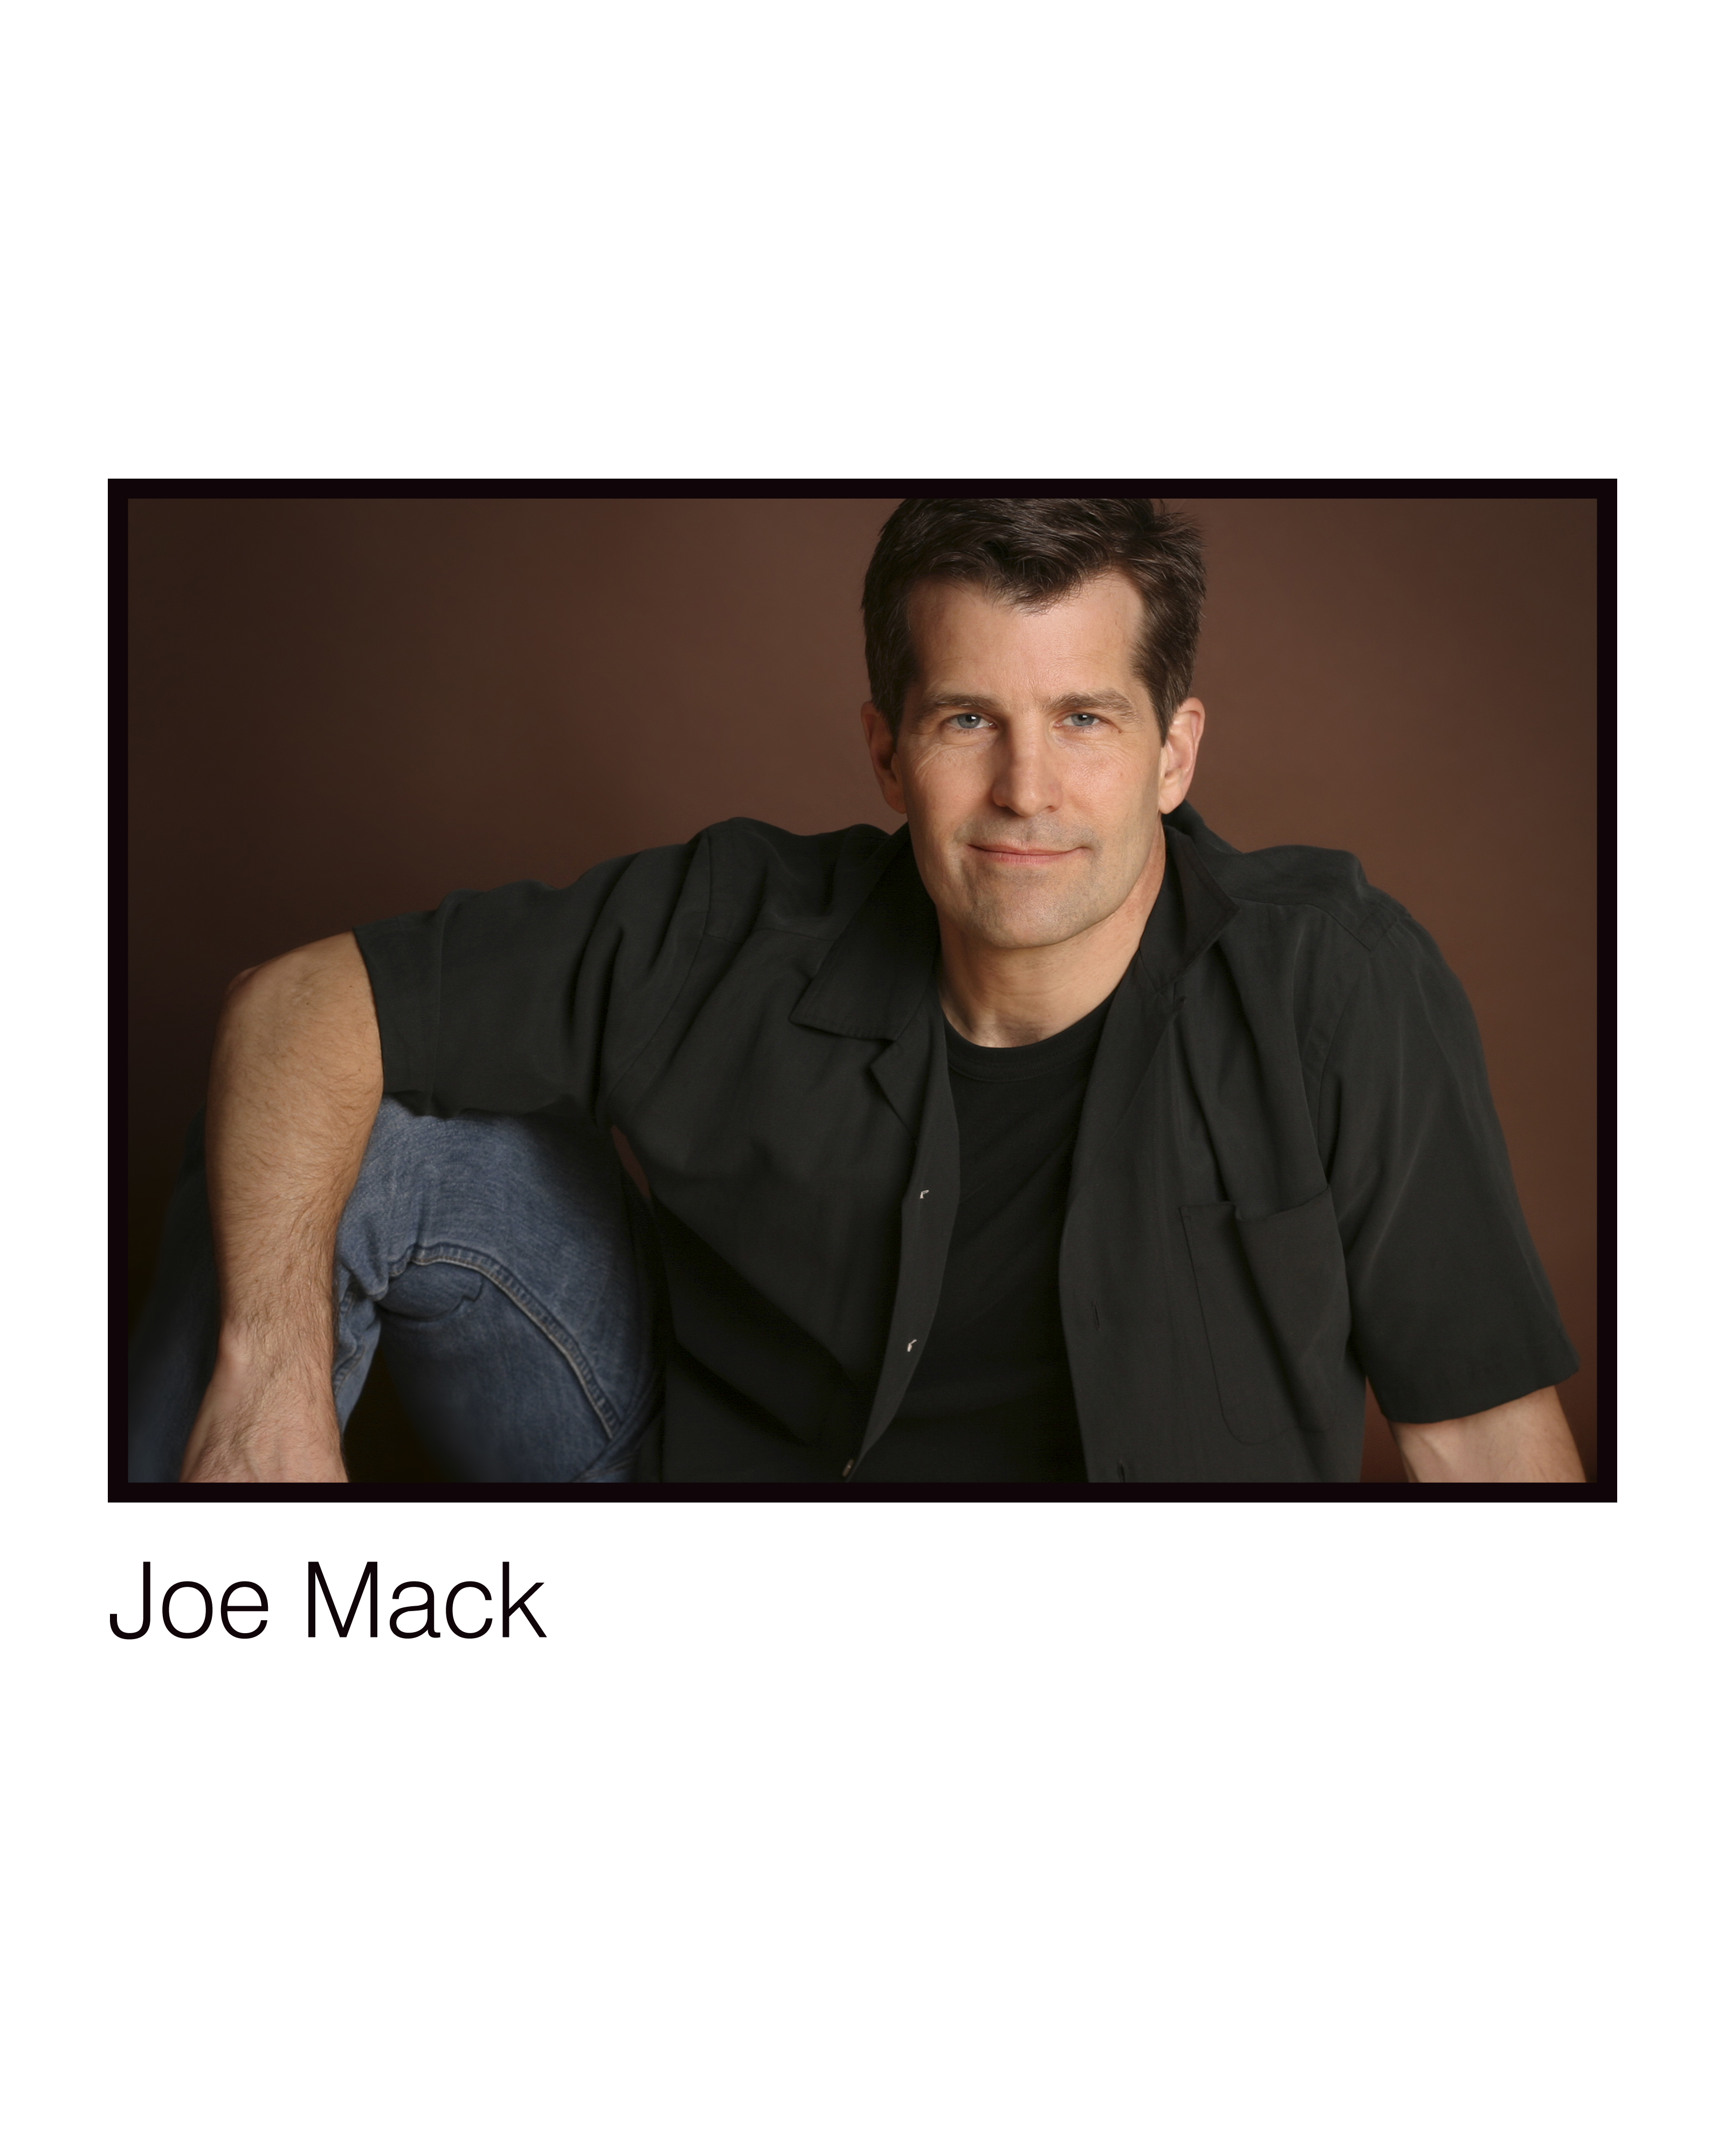 Joe Mack